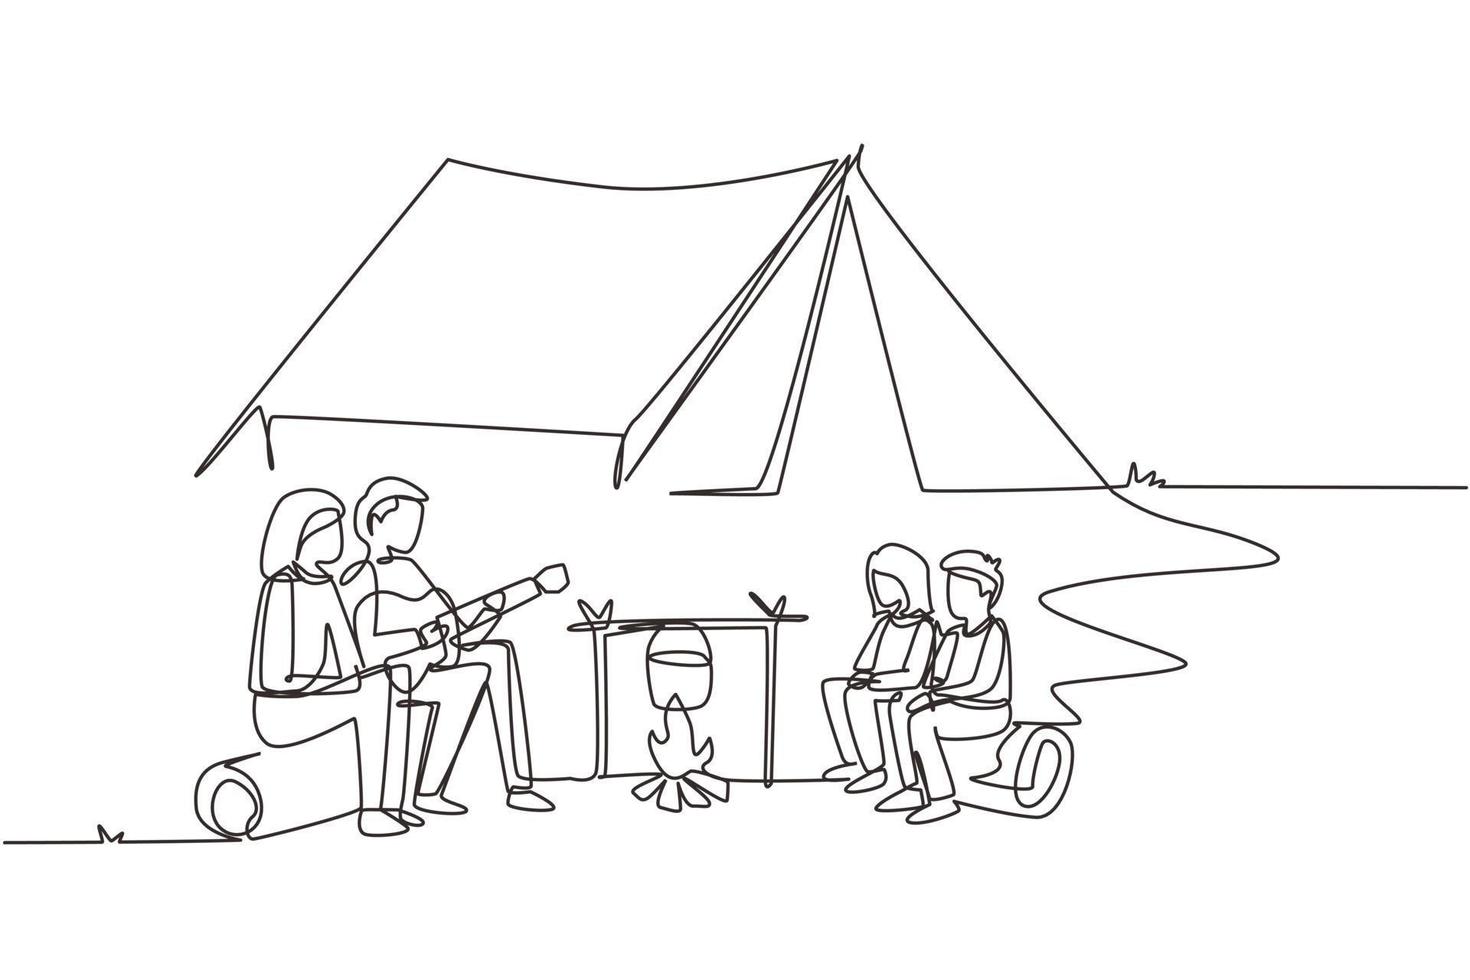 un'unica linea continua che disegna una famiglia felice intorno alla tenda del falò bollire l'acqua in pentola e sedersi sui tronchi. papà suona la chitarra e canta una canzone con mamma e bambini. illustrazione vettoriale di un disegno di linea